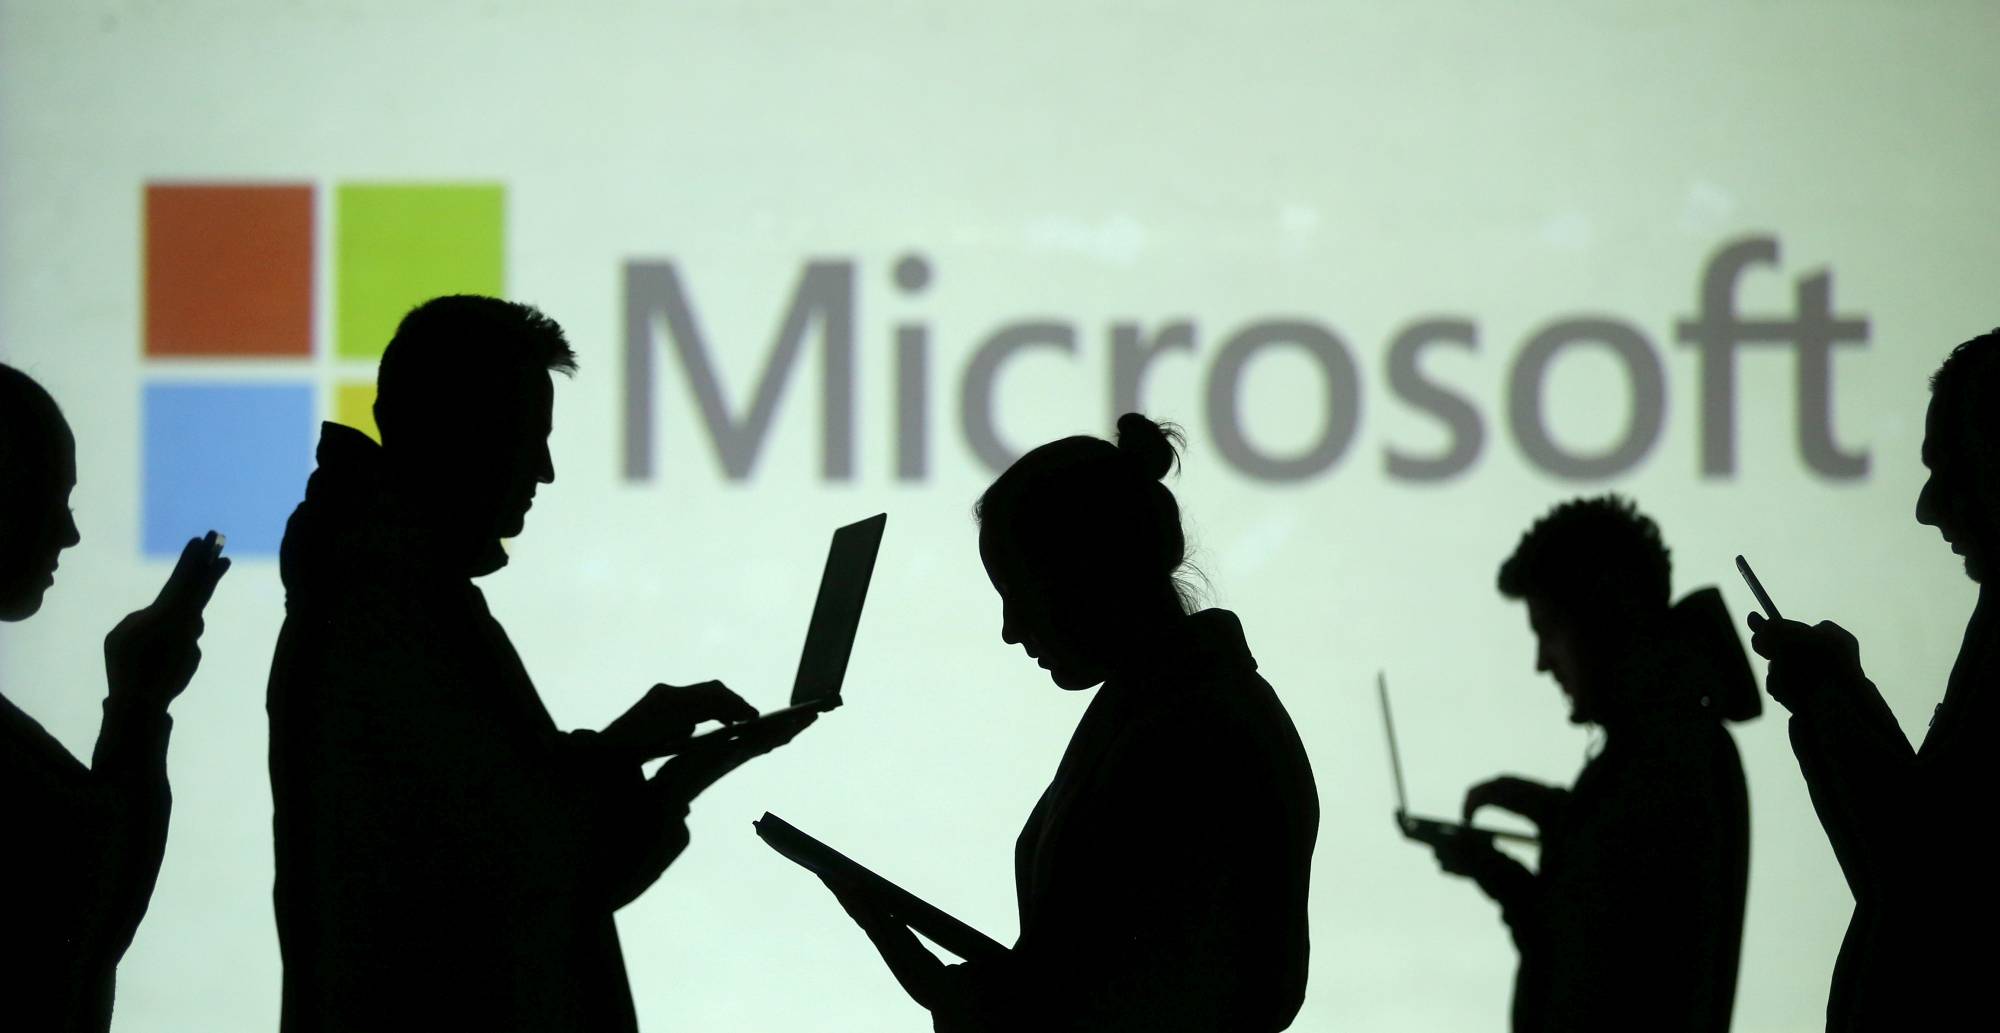 Microsoft: nyligen omfattande avbrott orsakat av en uppdatering, inte cyberattack